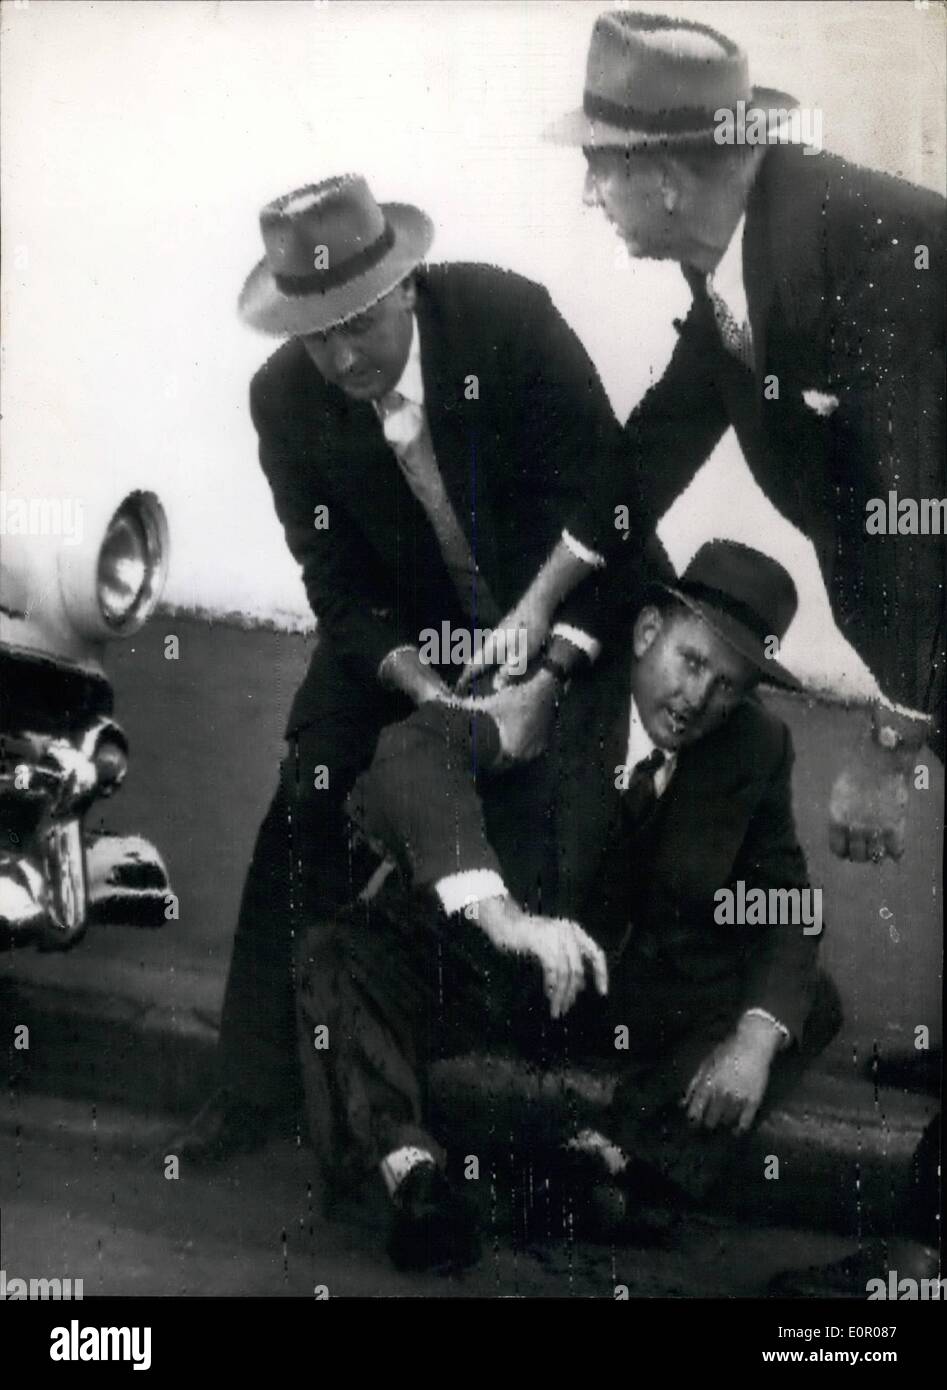 24 maggio 1957 - 24-5-57 uomo impazzisce con fucile a Sydney. Uccide uno, ferite due. Charles Spittiri, un migrante Maltese è andato berserk con un fucile da caccia a Sydney in Australia, tiro morti un uomo, ferendo una donna e un detective, poi cadde morto da un proiettile dal poliziotto ferito la pistola. Il pazzo bandito è stato presso la baia in una casa per sei ore. La foto mostra: compagni di funzionari di polizia si sforzano disperatamente di leale il sangue versare dal fucile-braccio frantumato di eroica giovani detective, Ken Gilmour, che hanno ucciso la maniacale killer Maltese dopo la Sydney, Australia battaglia della pistola Foto Stock